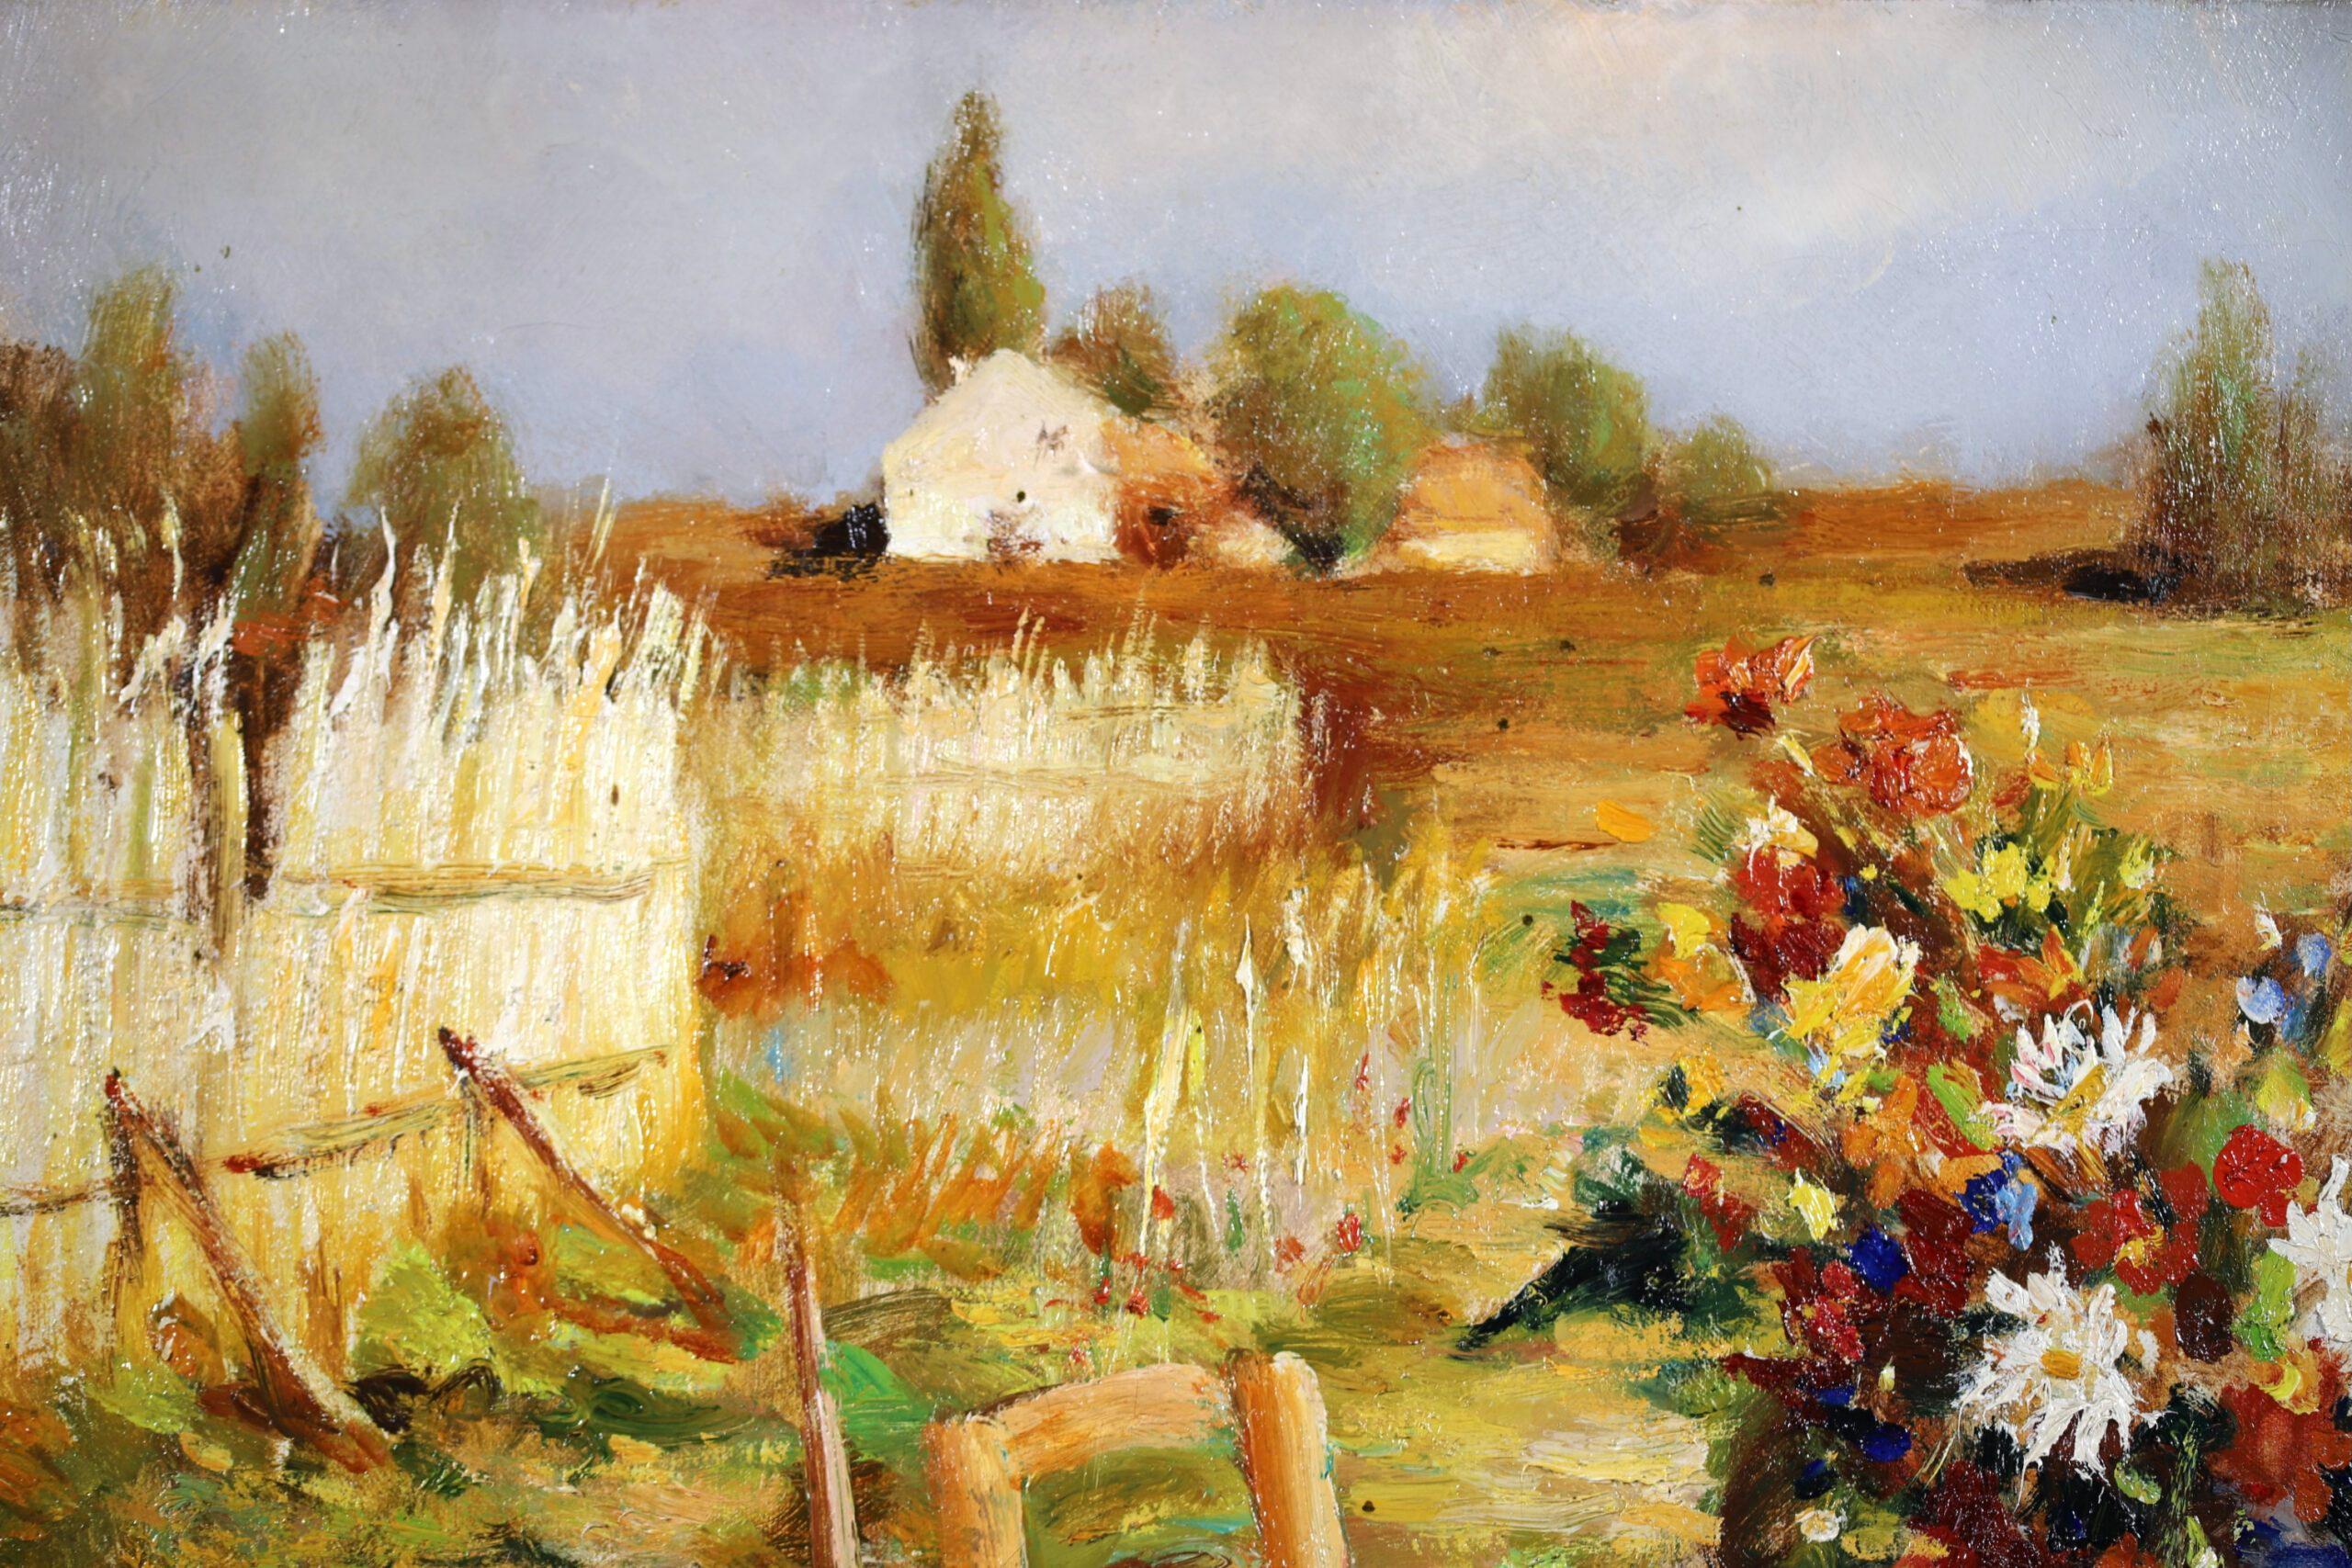 Paysage à l'huile sur toile signé, datant de 1950, de Marcel Dyf, peintre post impressionniste français très recherché. L'œuvre représente une table de petit-déjeuner avec du pain et, au centre, un vase bleu rempli de fleurs sauvages. La table est